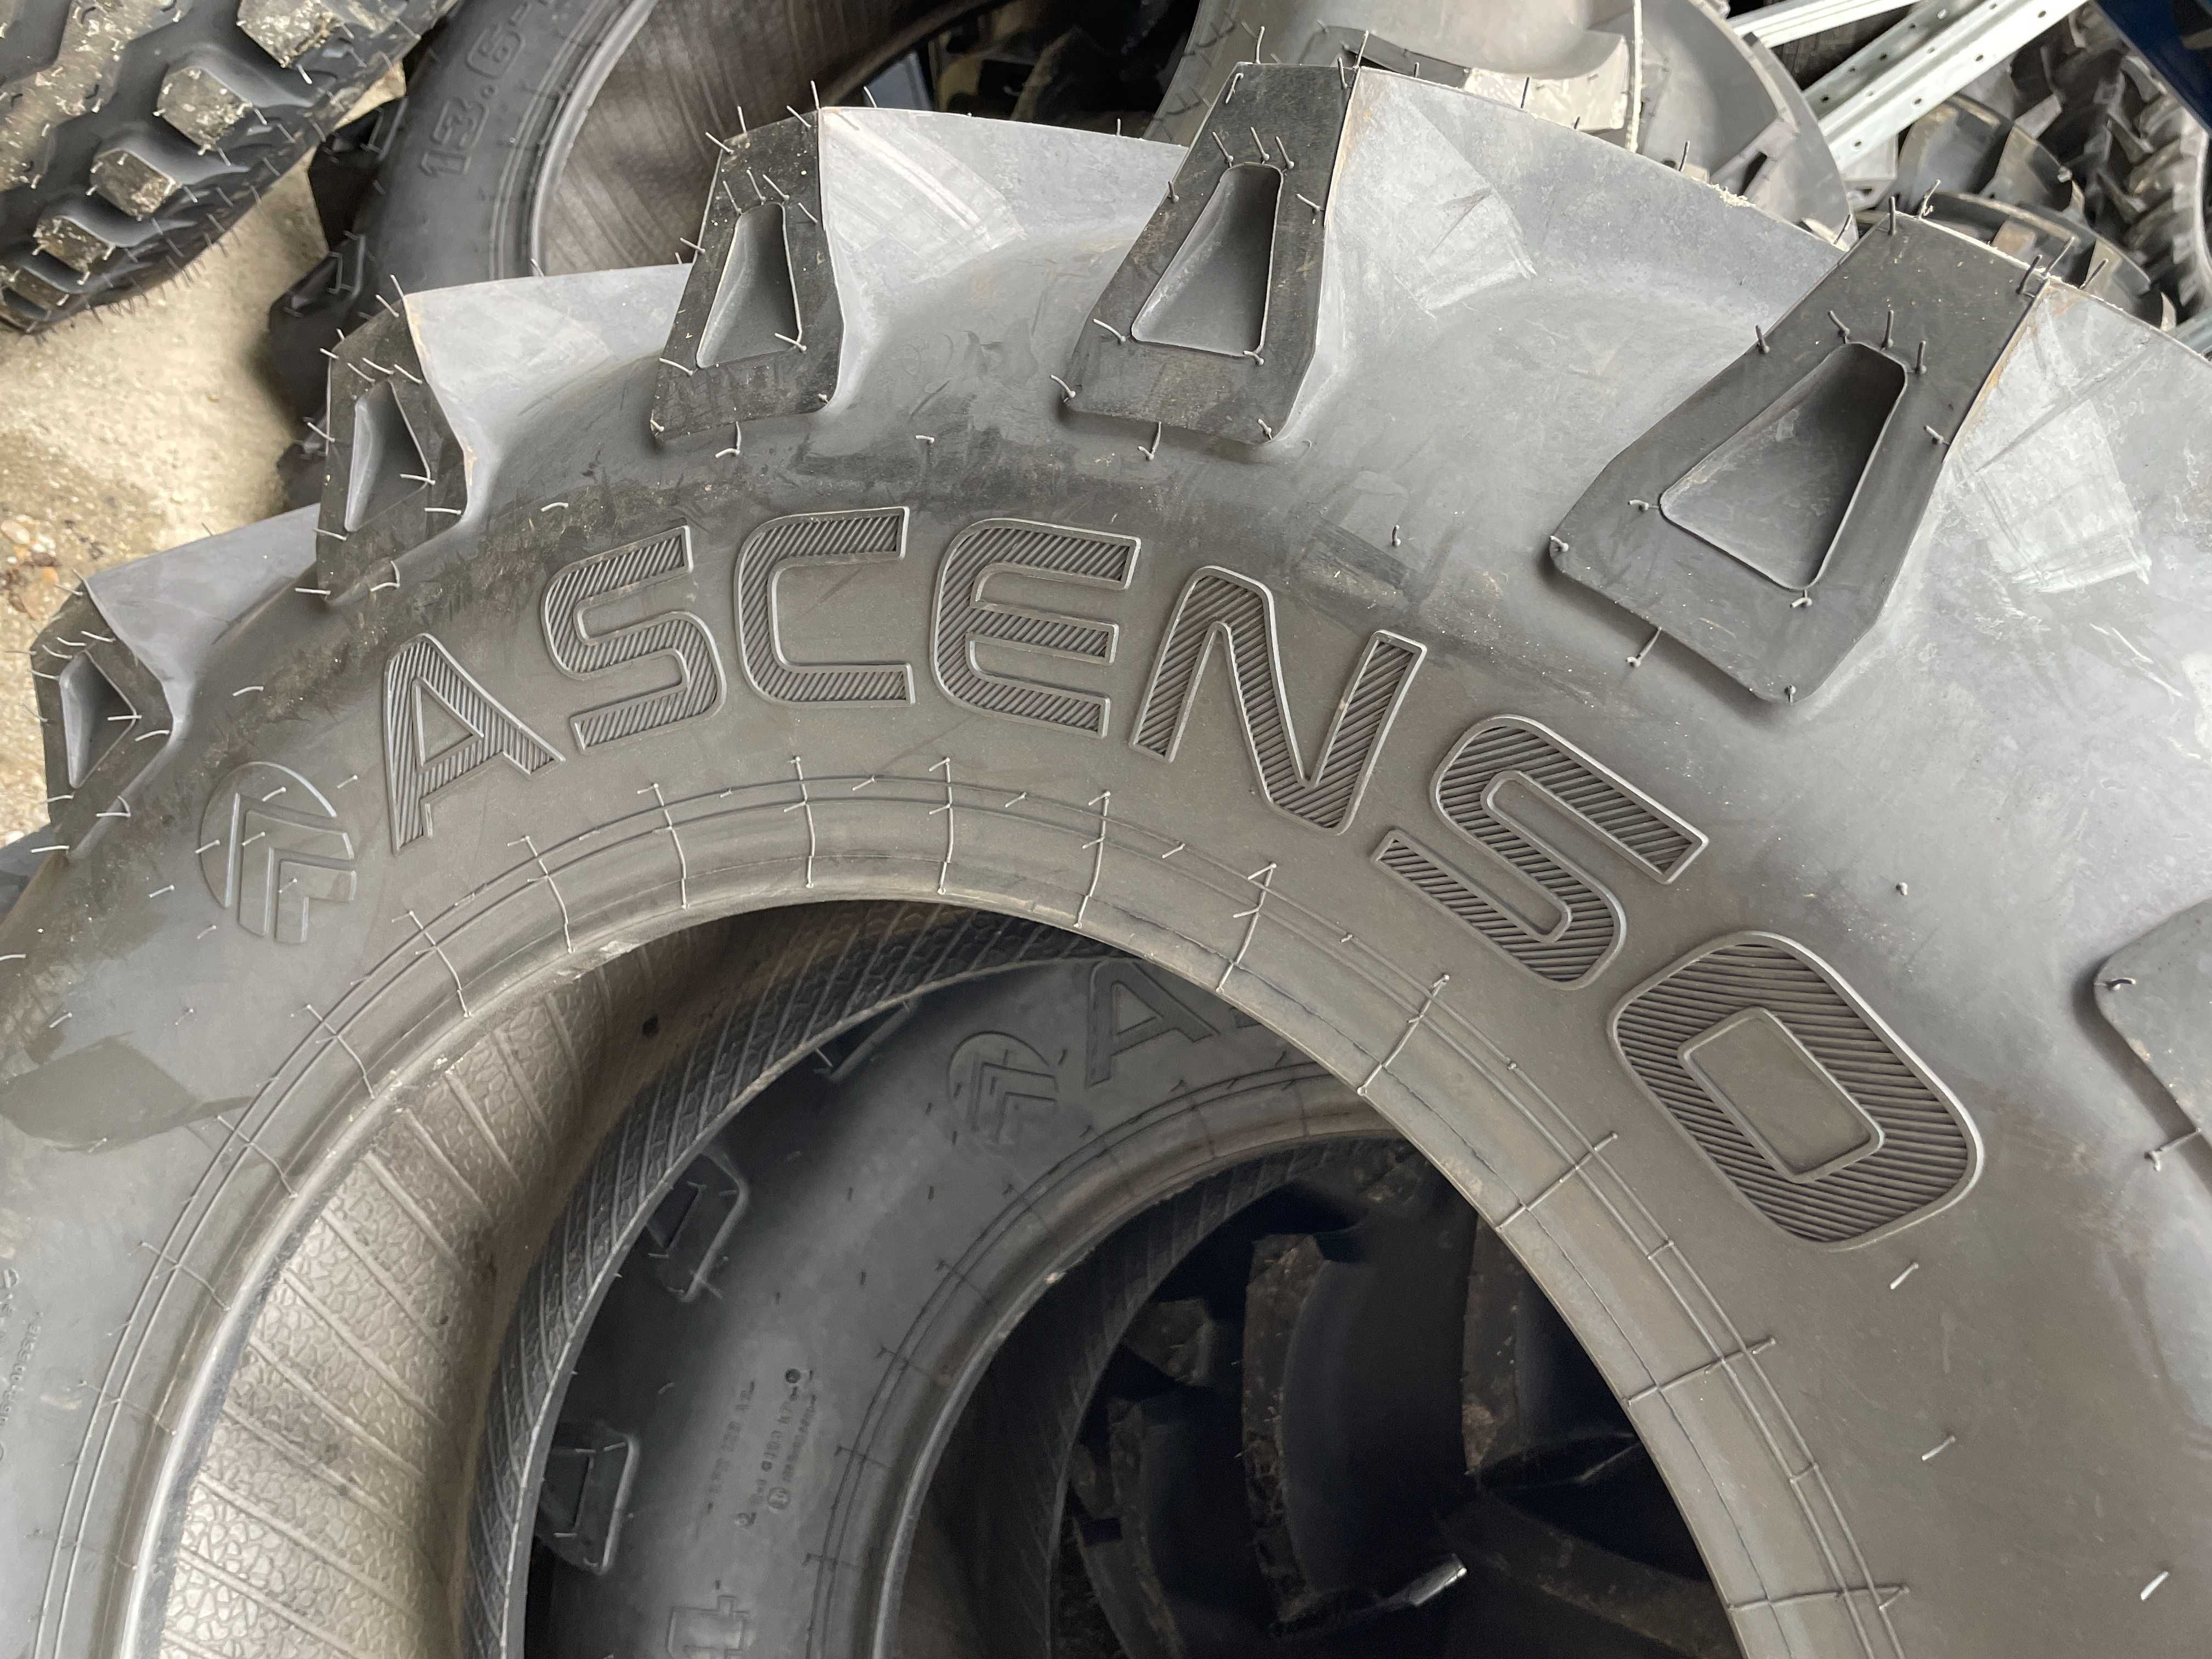 Cauciucuri noi marca Ascenso 14.9-24 8Pliuri tractor fata 4x4x